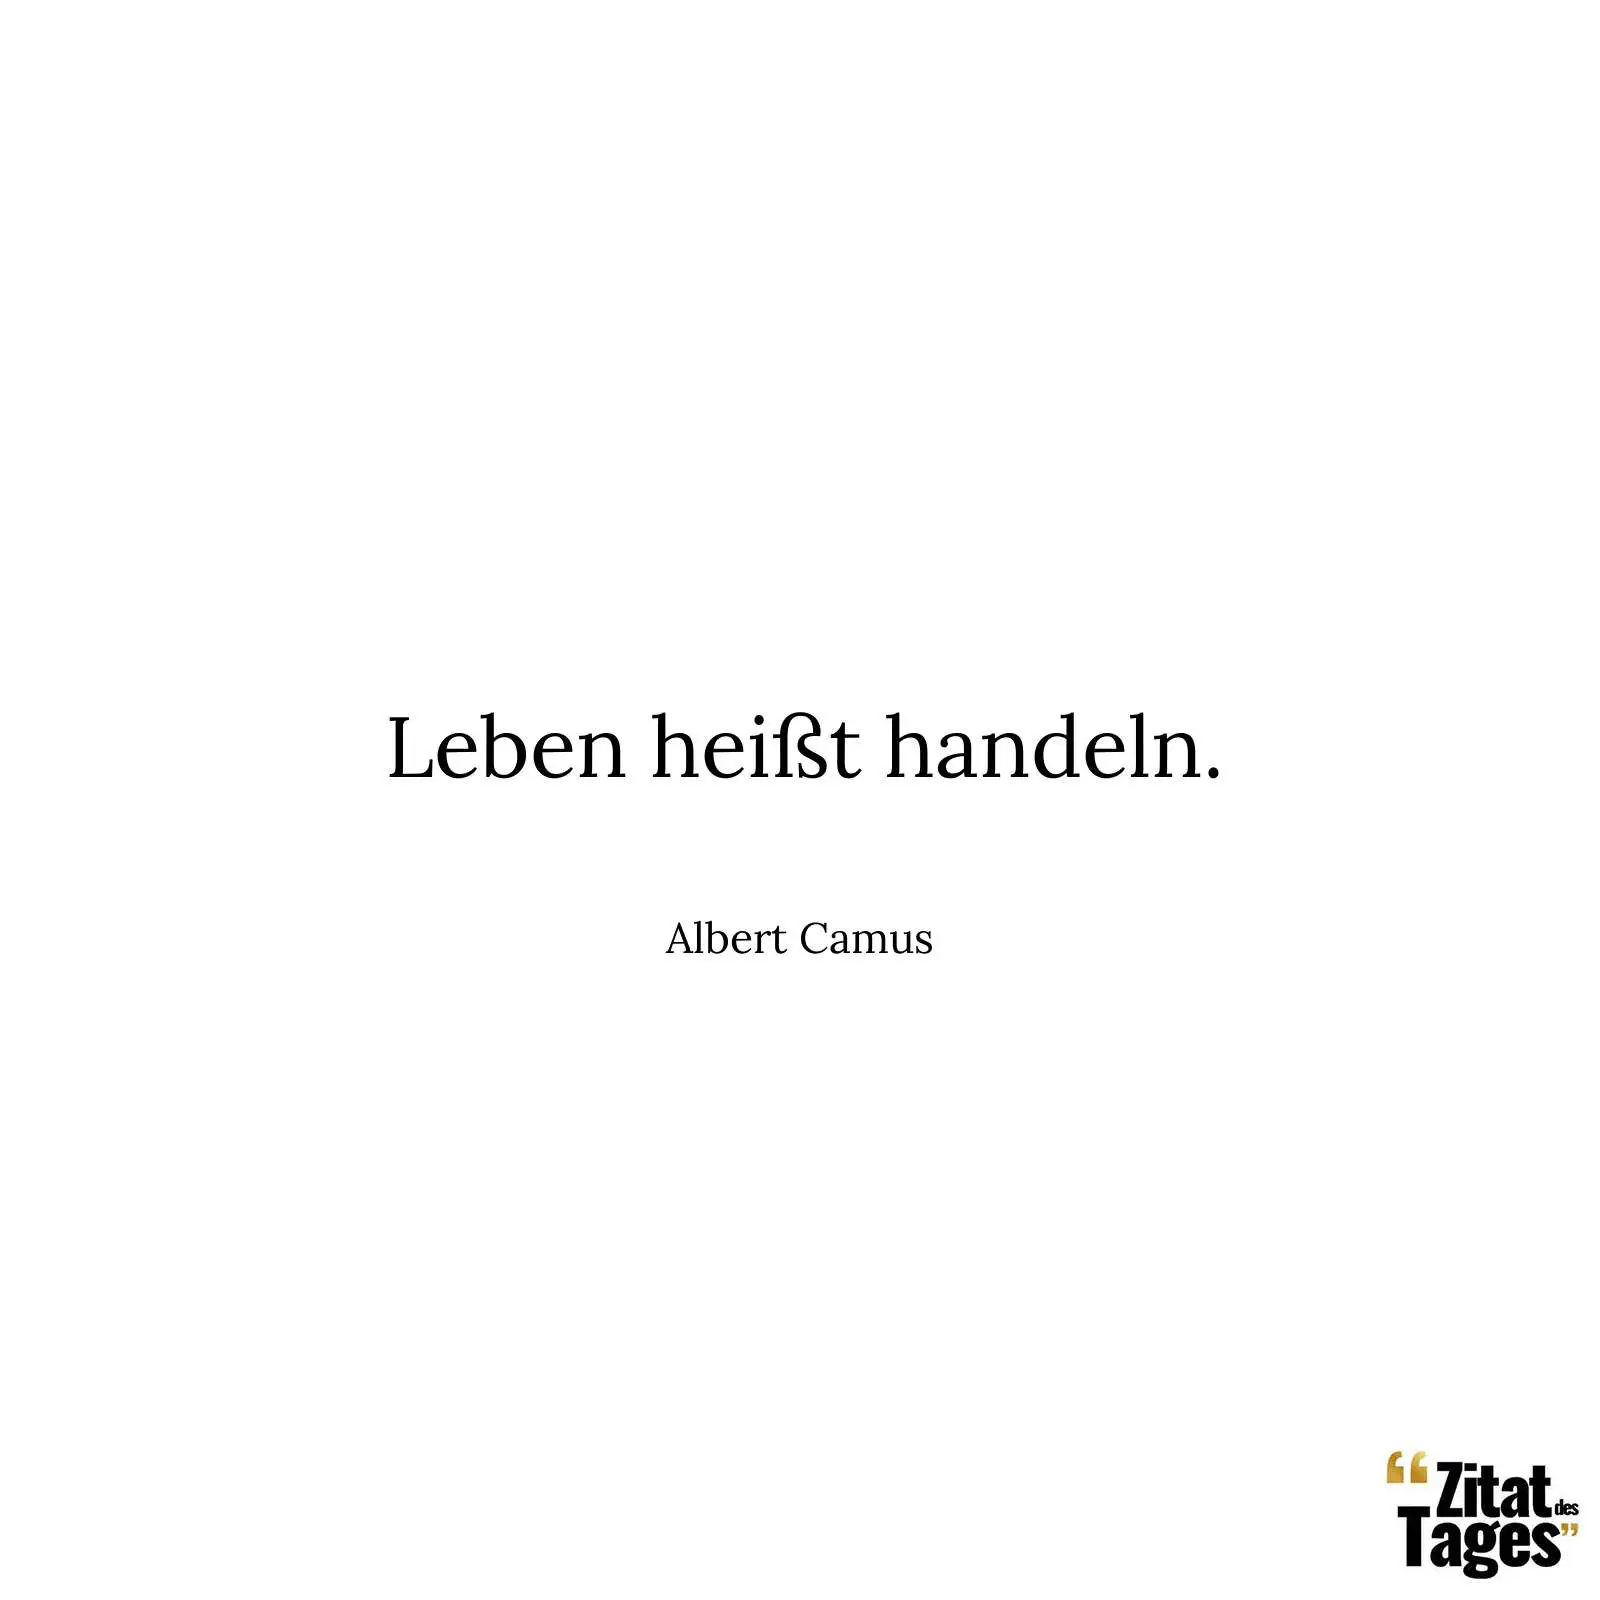 Leben heißt handeln. - Albert Camus